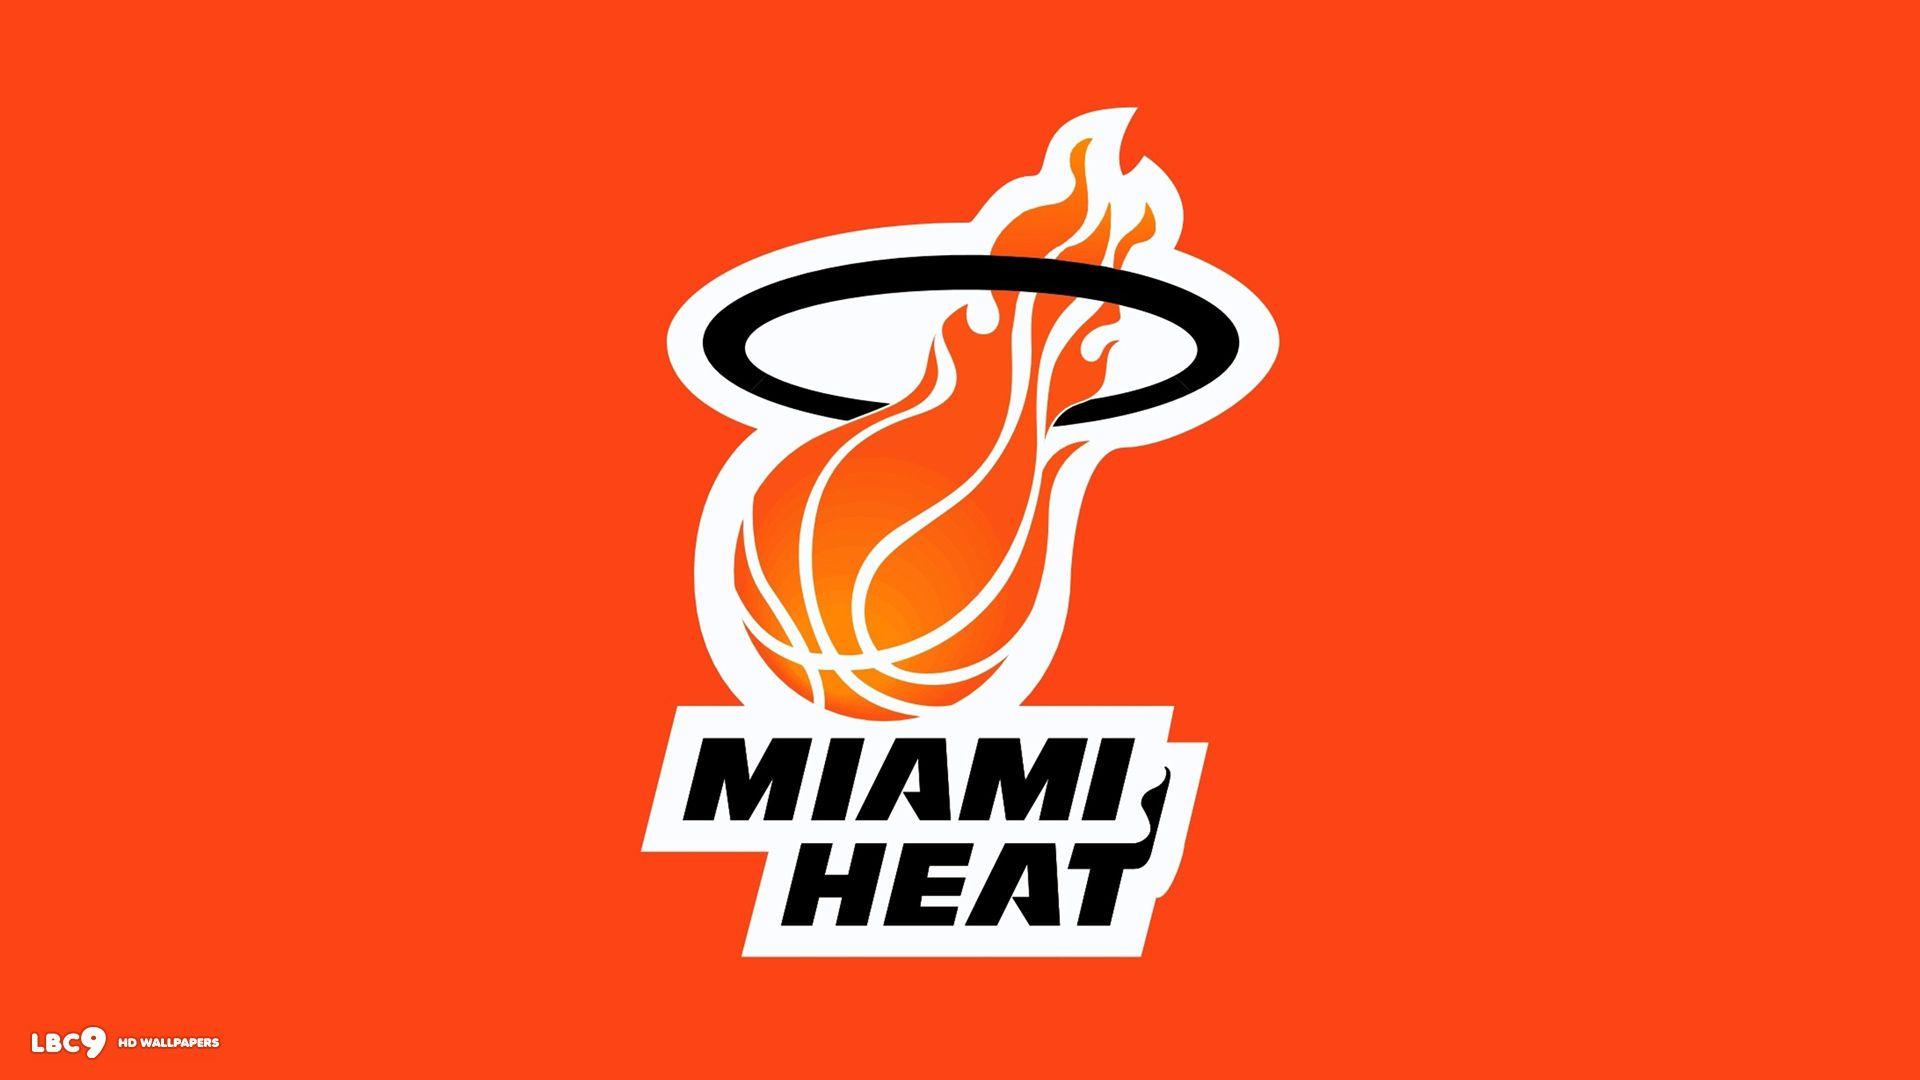 Miami Heat (id: 173483)